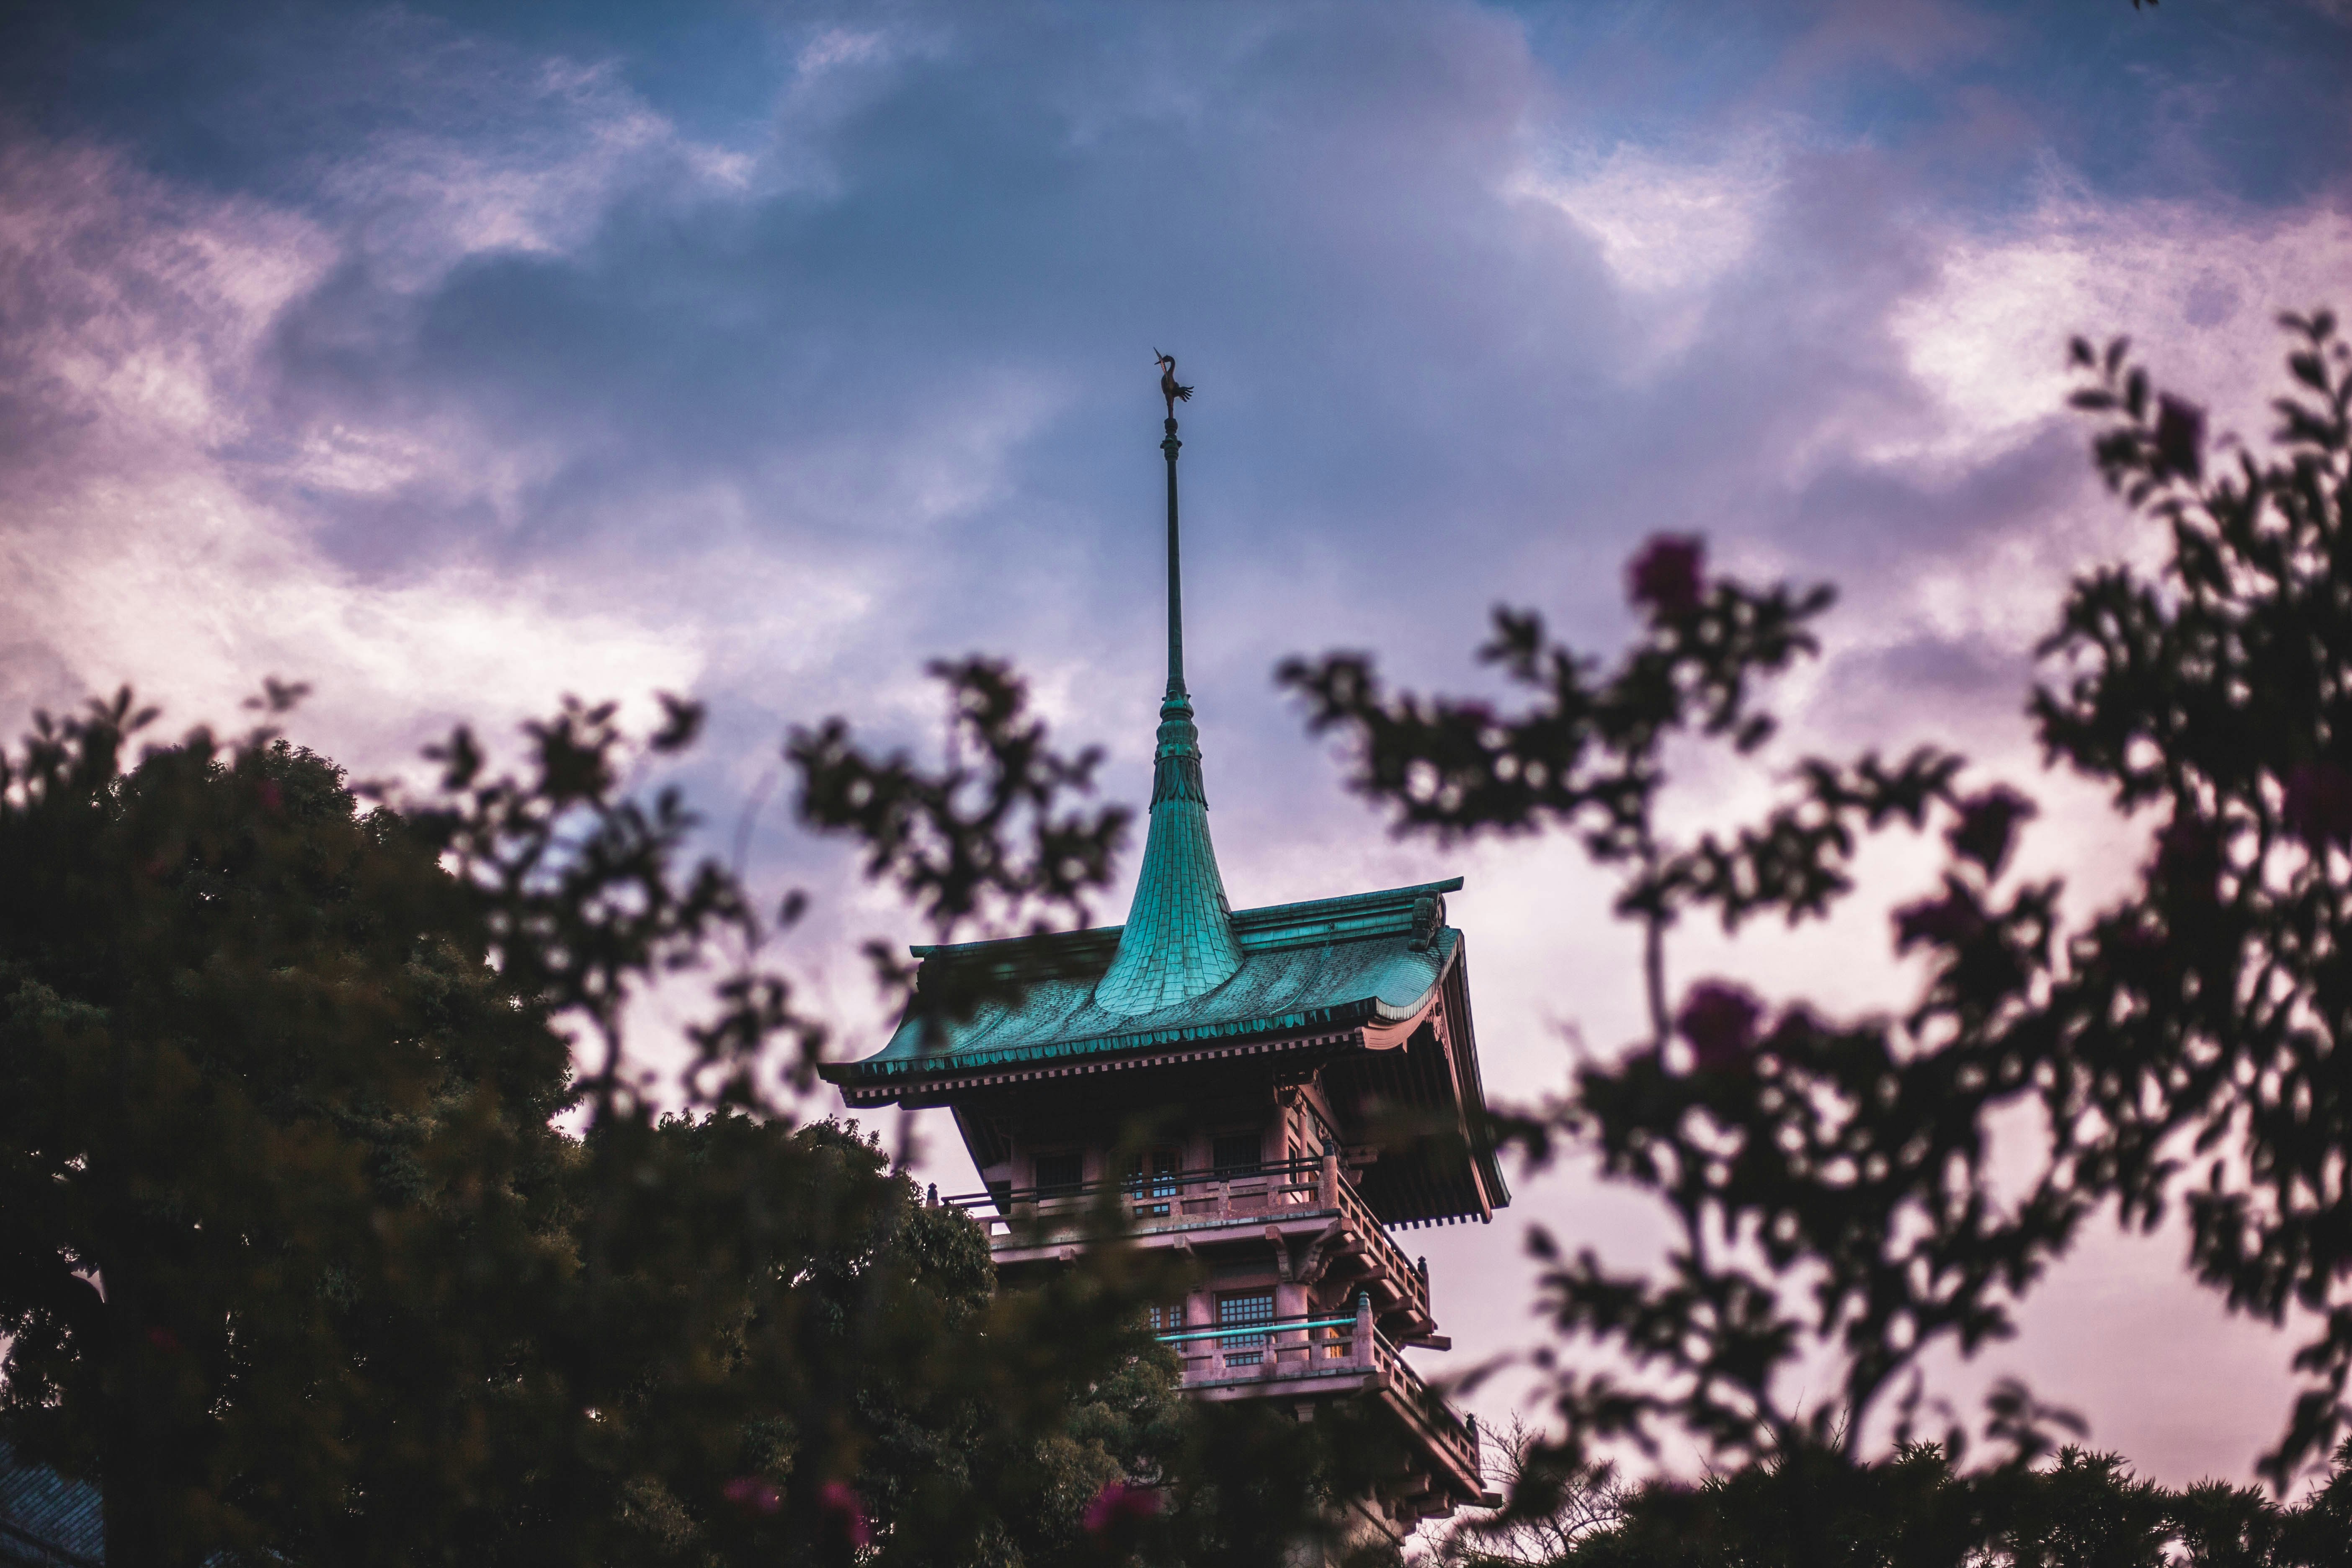 low angle photo of teal and brown pagoda